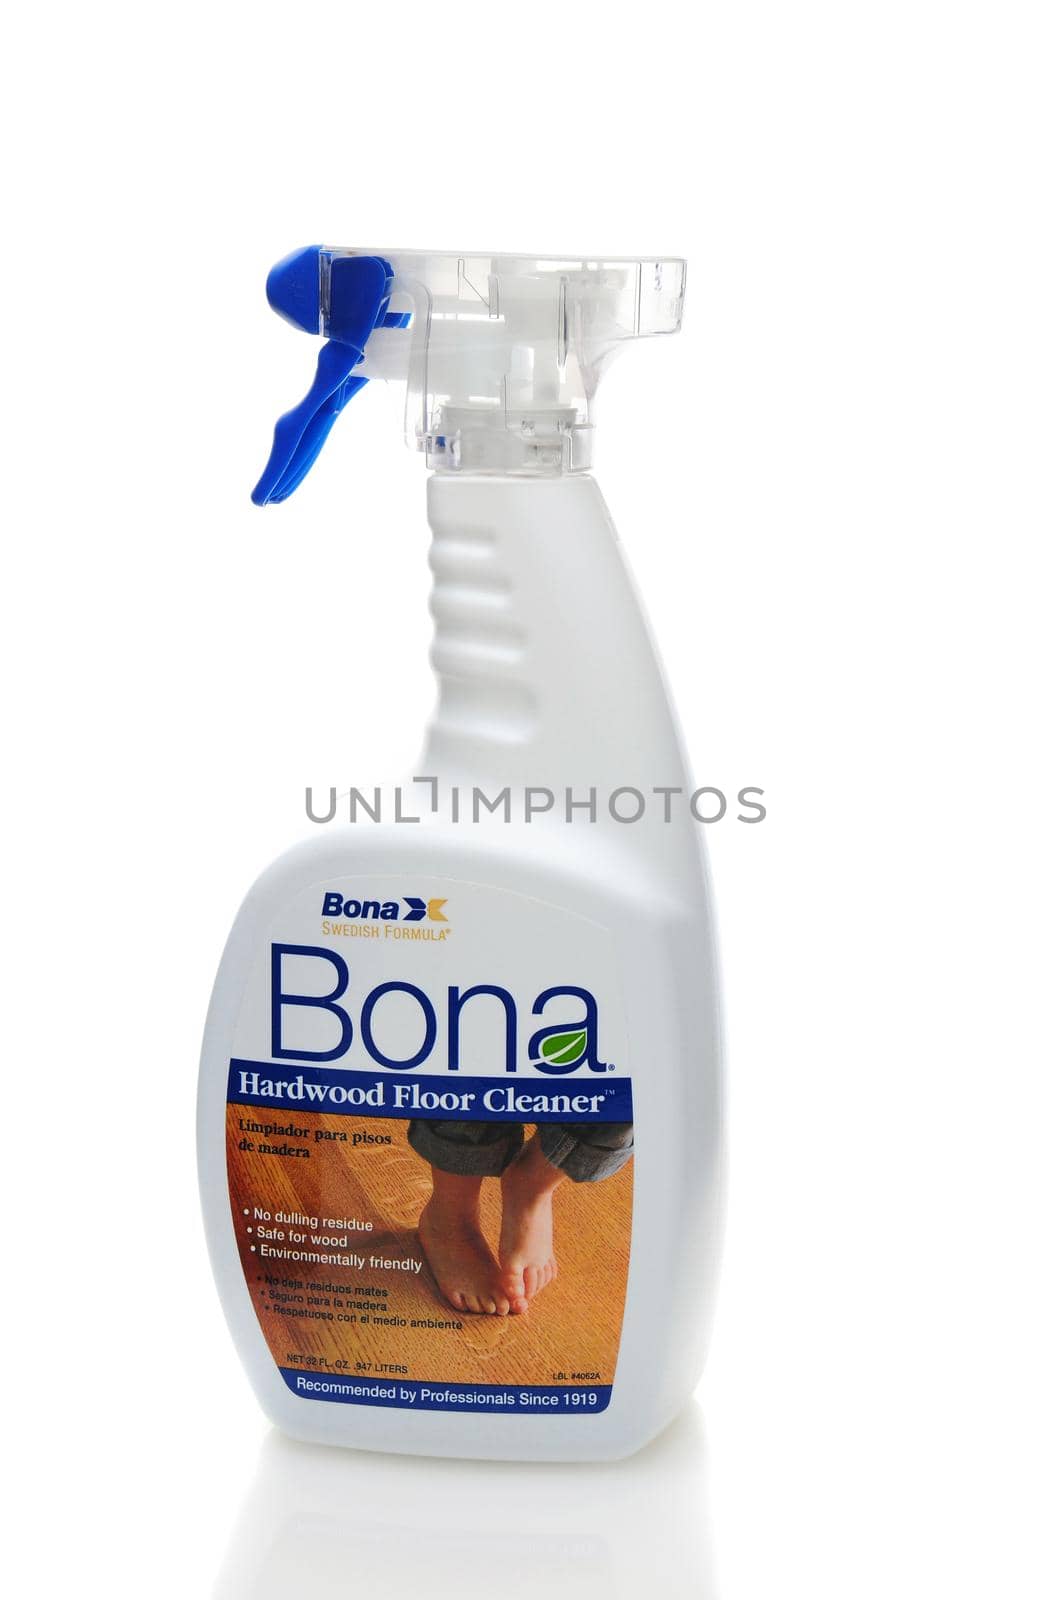 IRVINE, CALIFORNIA - 31 JAN 2011: Single 32oz bottle of Bona Hardwood Floor Cleaner on a white background.